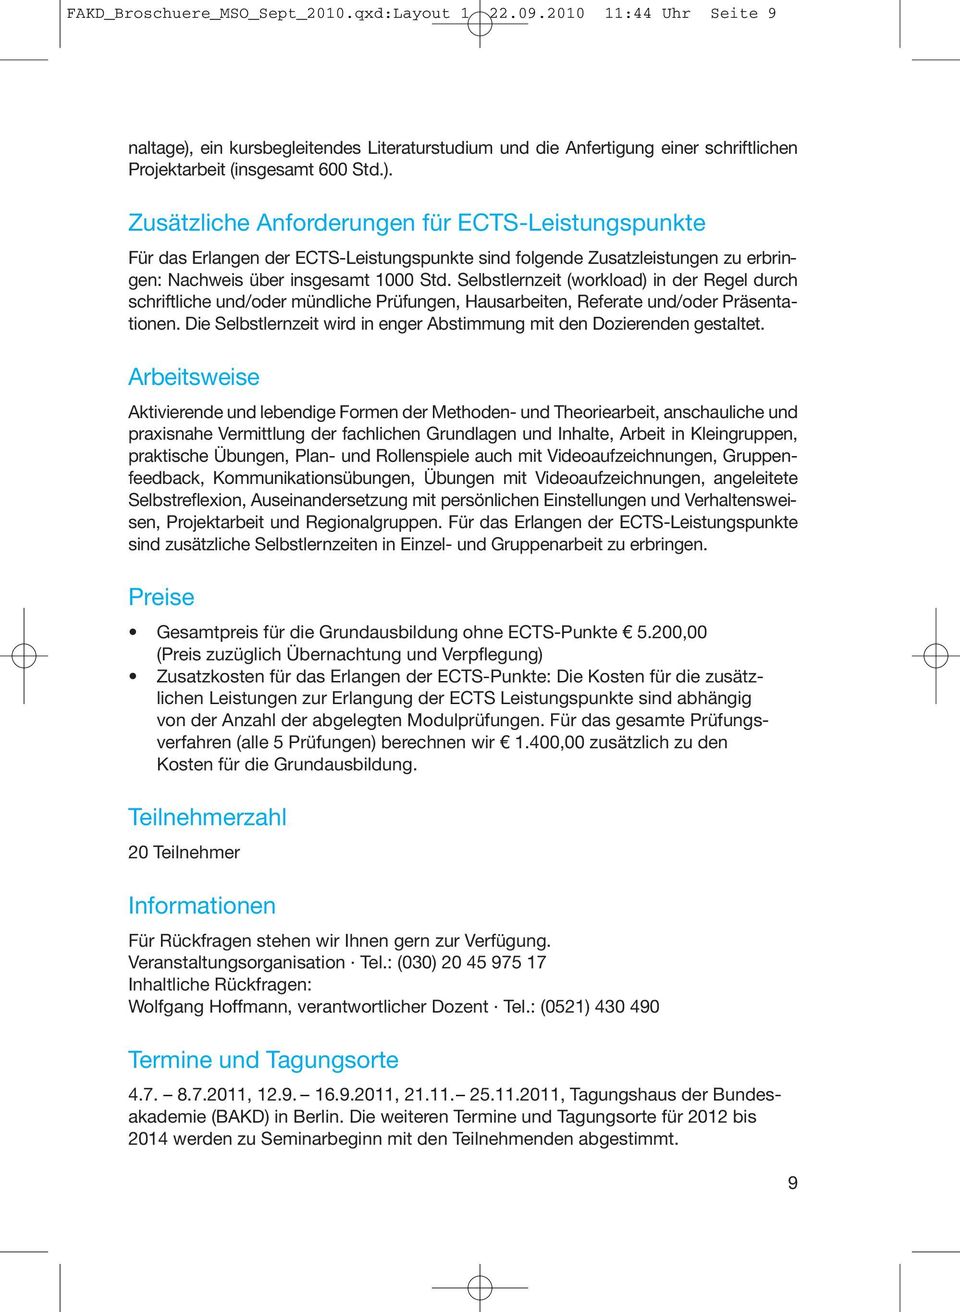 Zusätzliche Anforderungen für ECTS-Leistungspunkte Für das Erlangen der ECTS-Leistungspunkte sind folgende Zusatzleistungen zu erbringen: Nachweis über insgesamt 1000 Std.